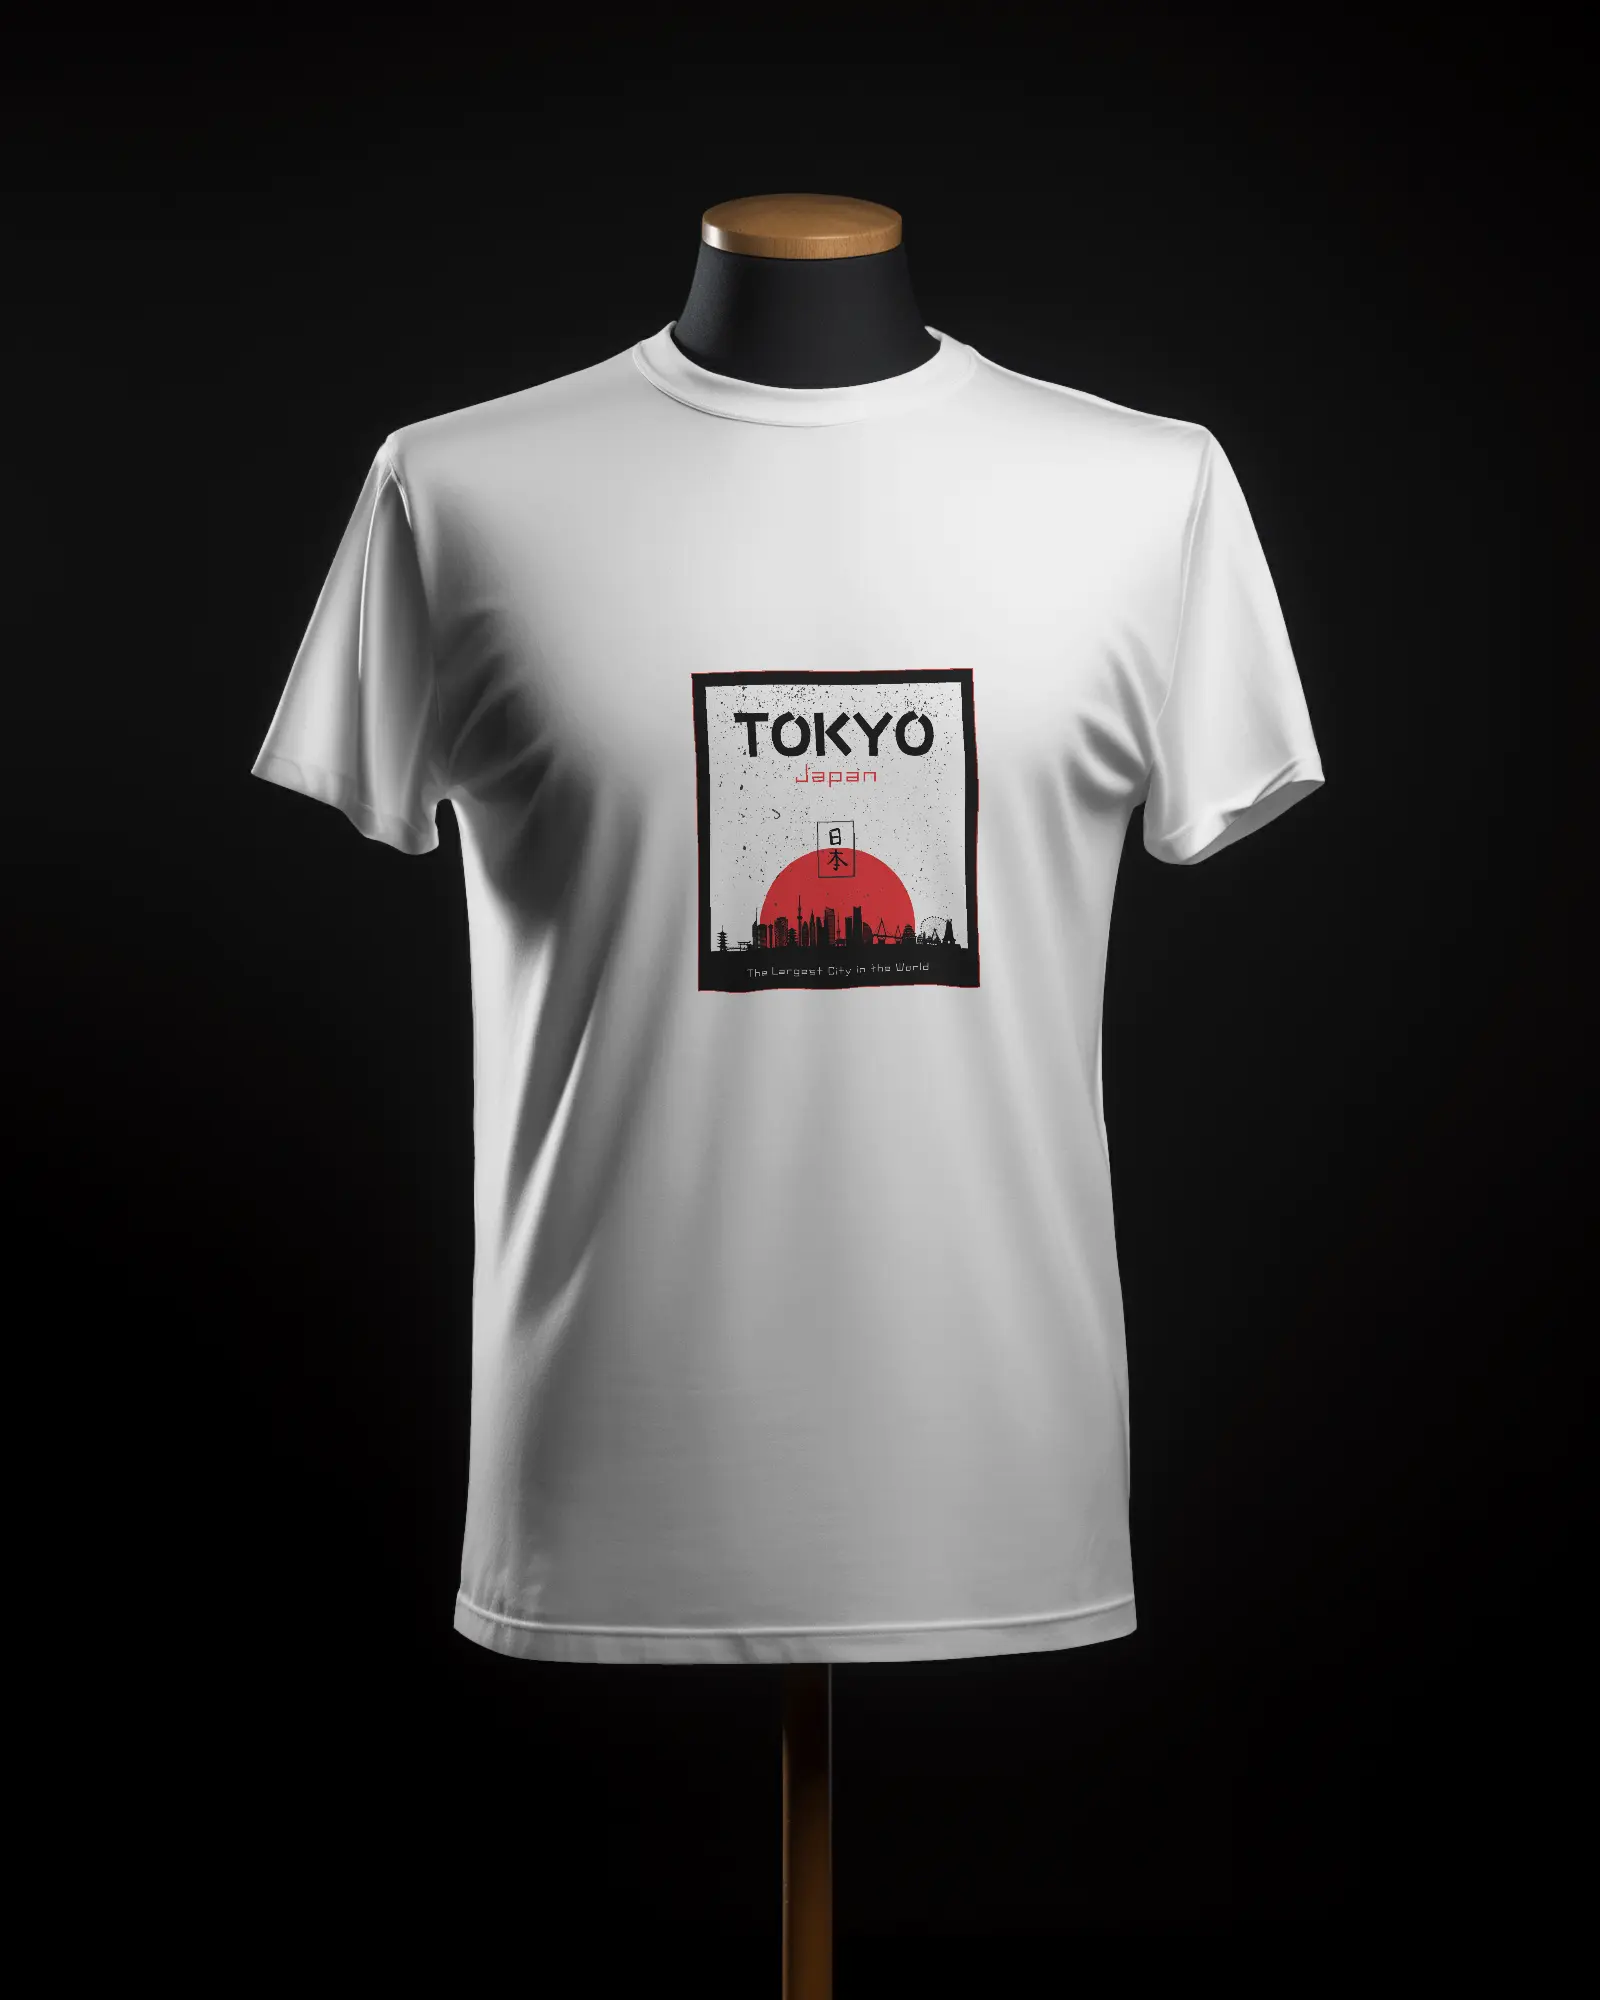 Tokyo printed t shirt